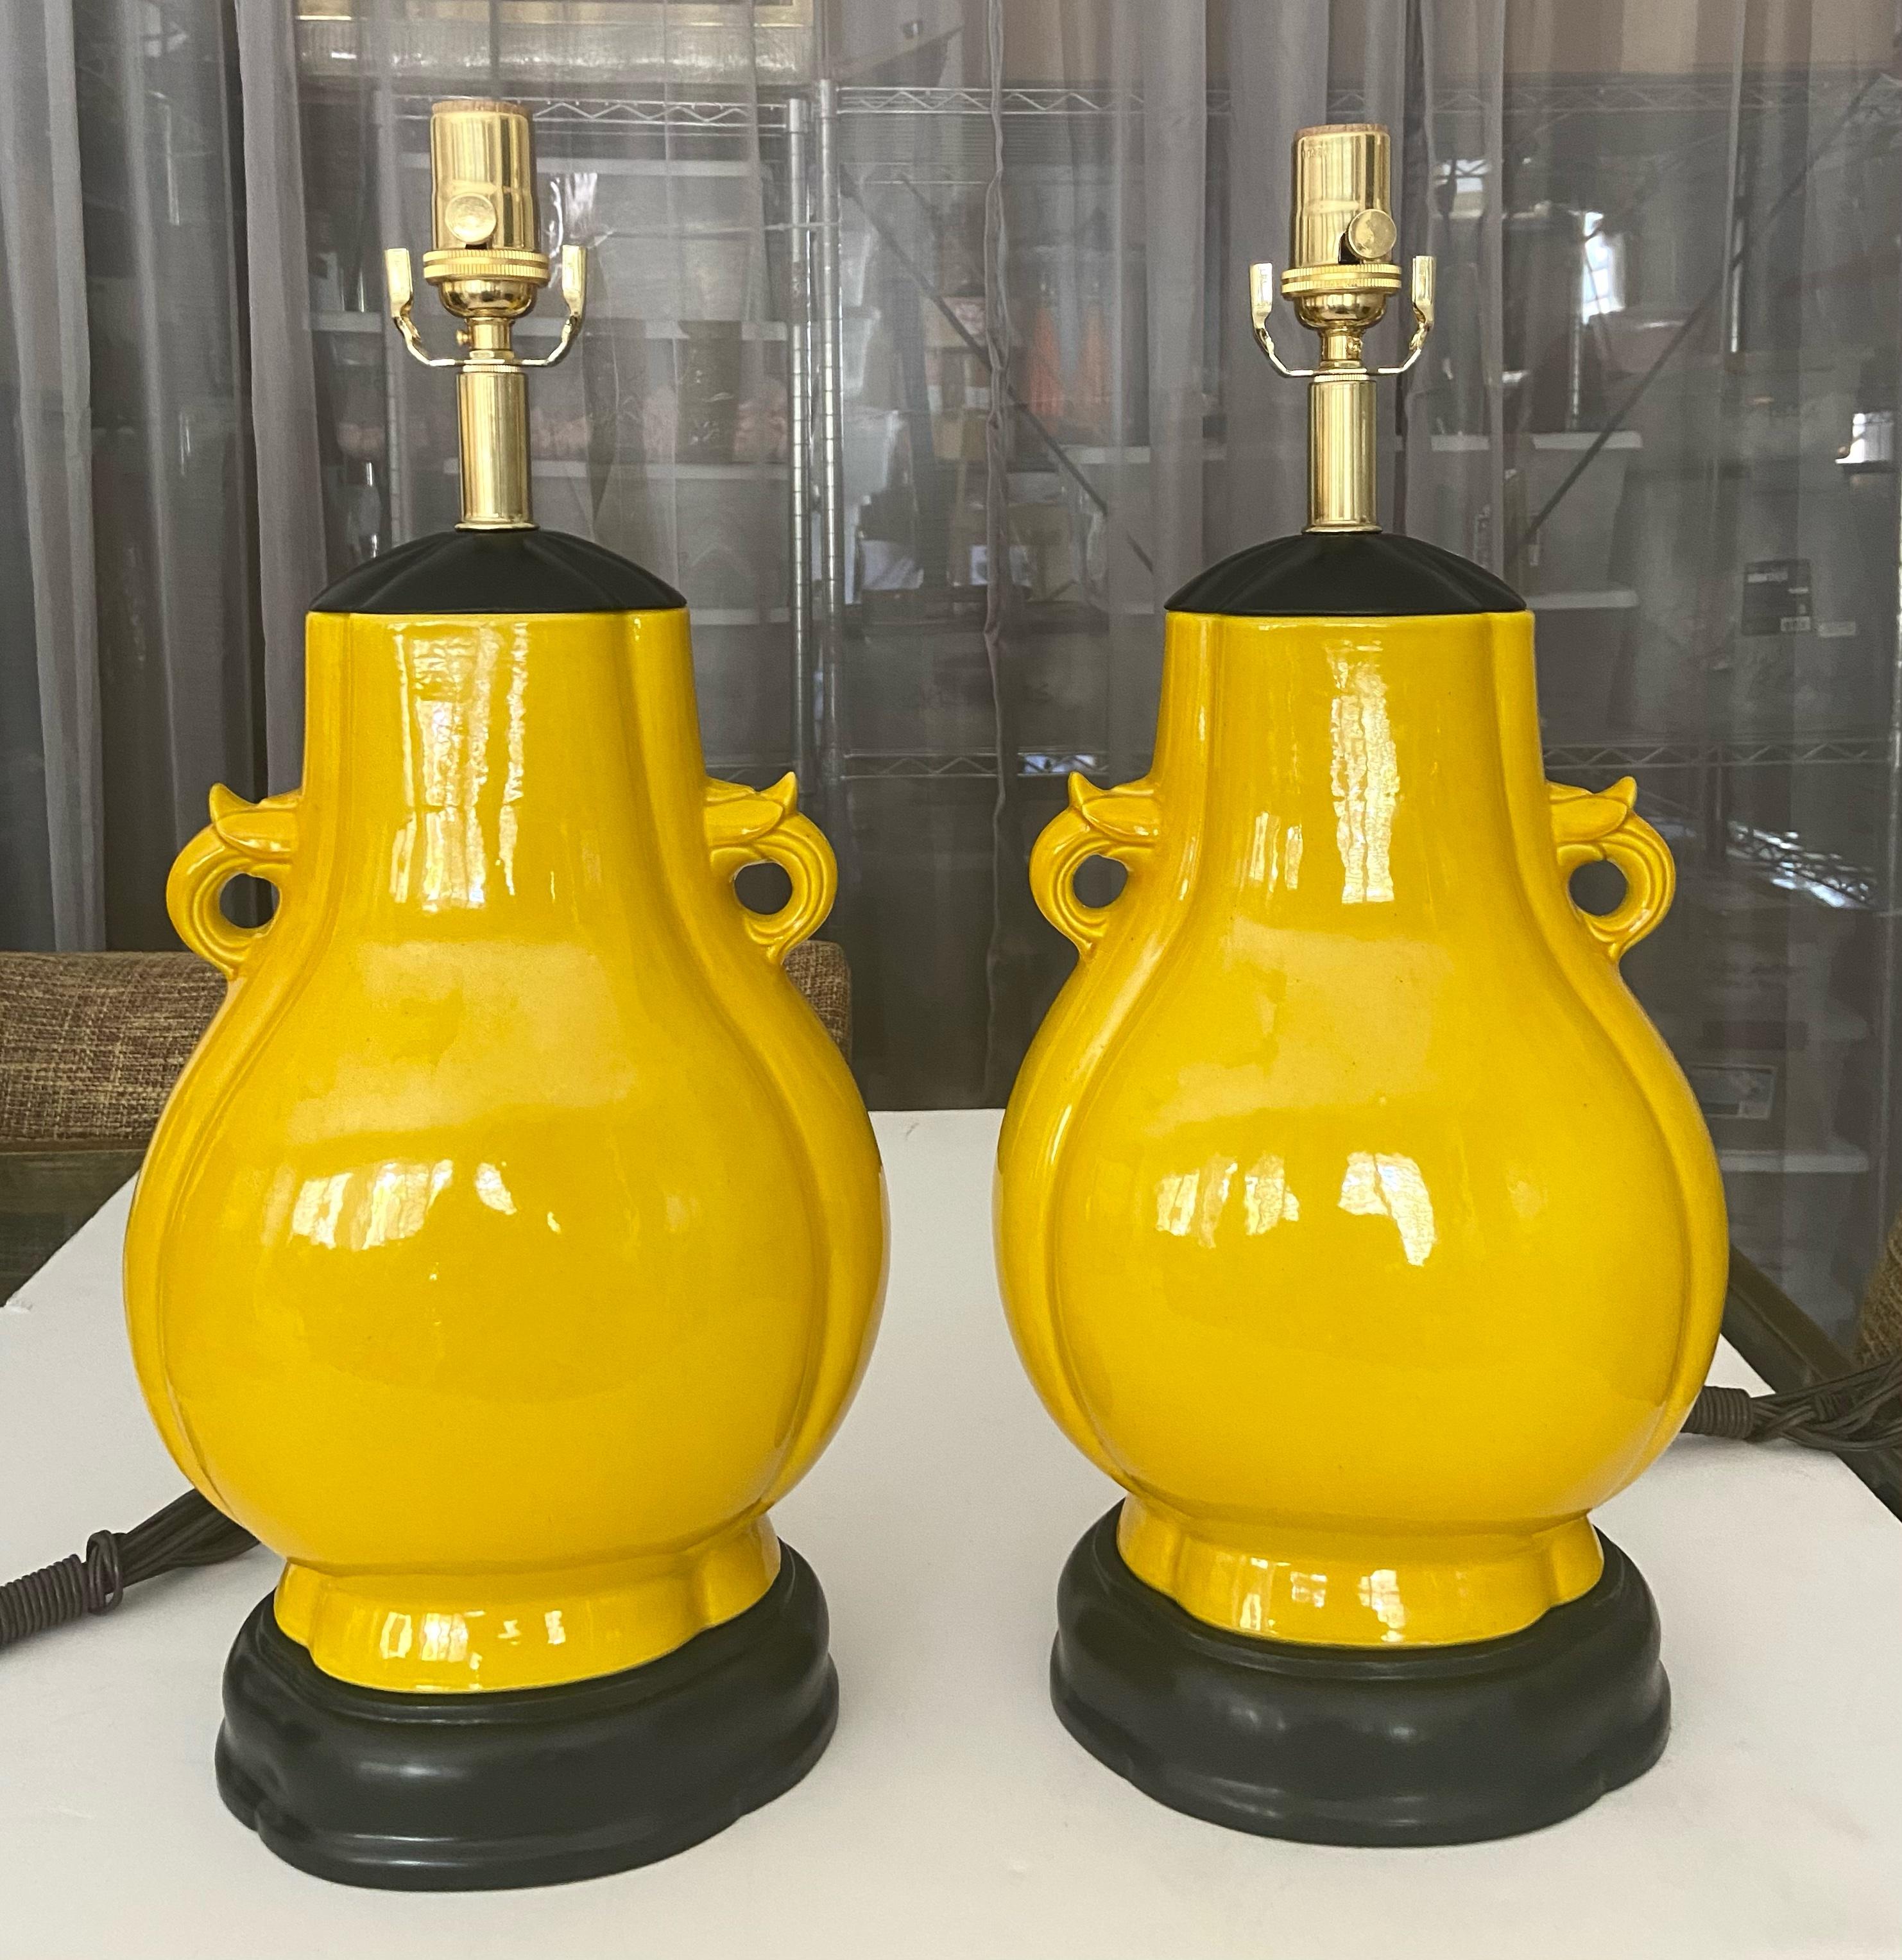 Paire de lampes de table en porcelaine japonaise de forme ovoïde aplatie, jaune et monochrome. Les vases jaune vif sont flanqués de poignées, montés sur leur base et leur couvercle en bois tourné sculpté et laqué noir d'origine. Le câblage a été